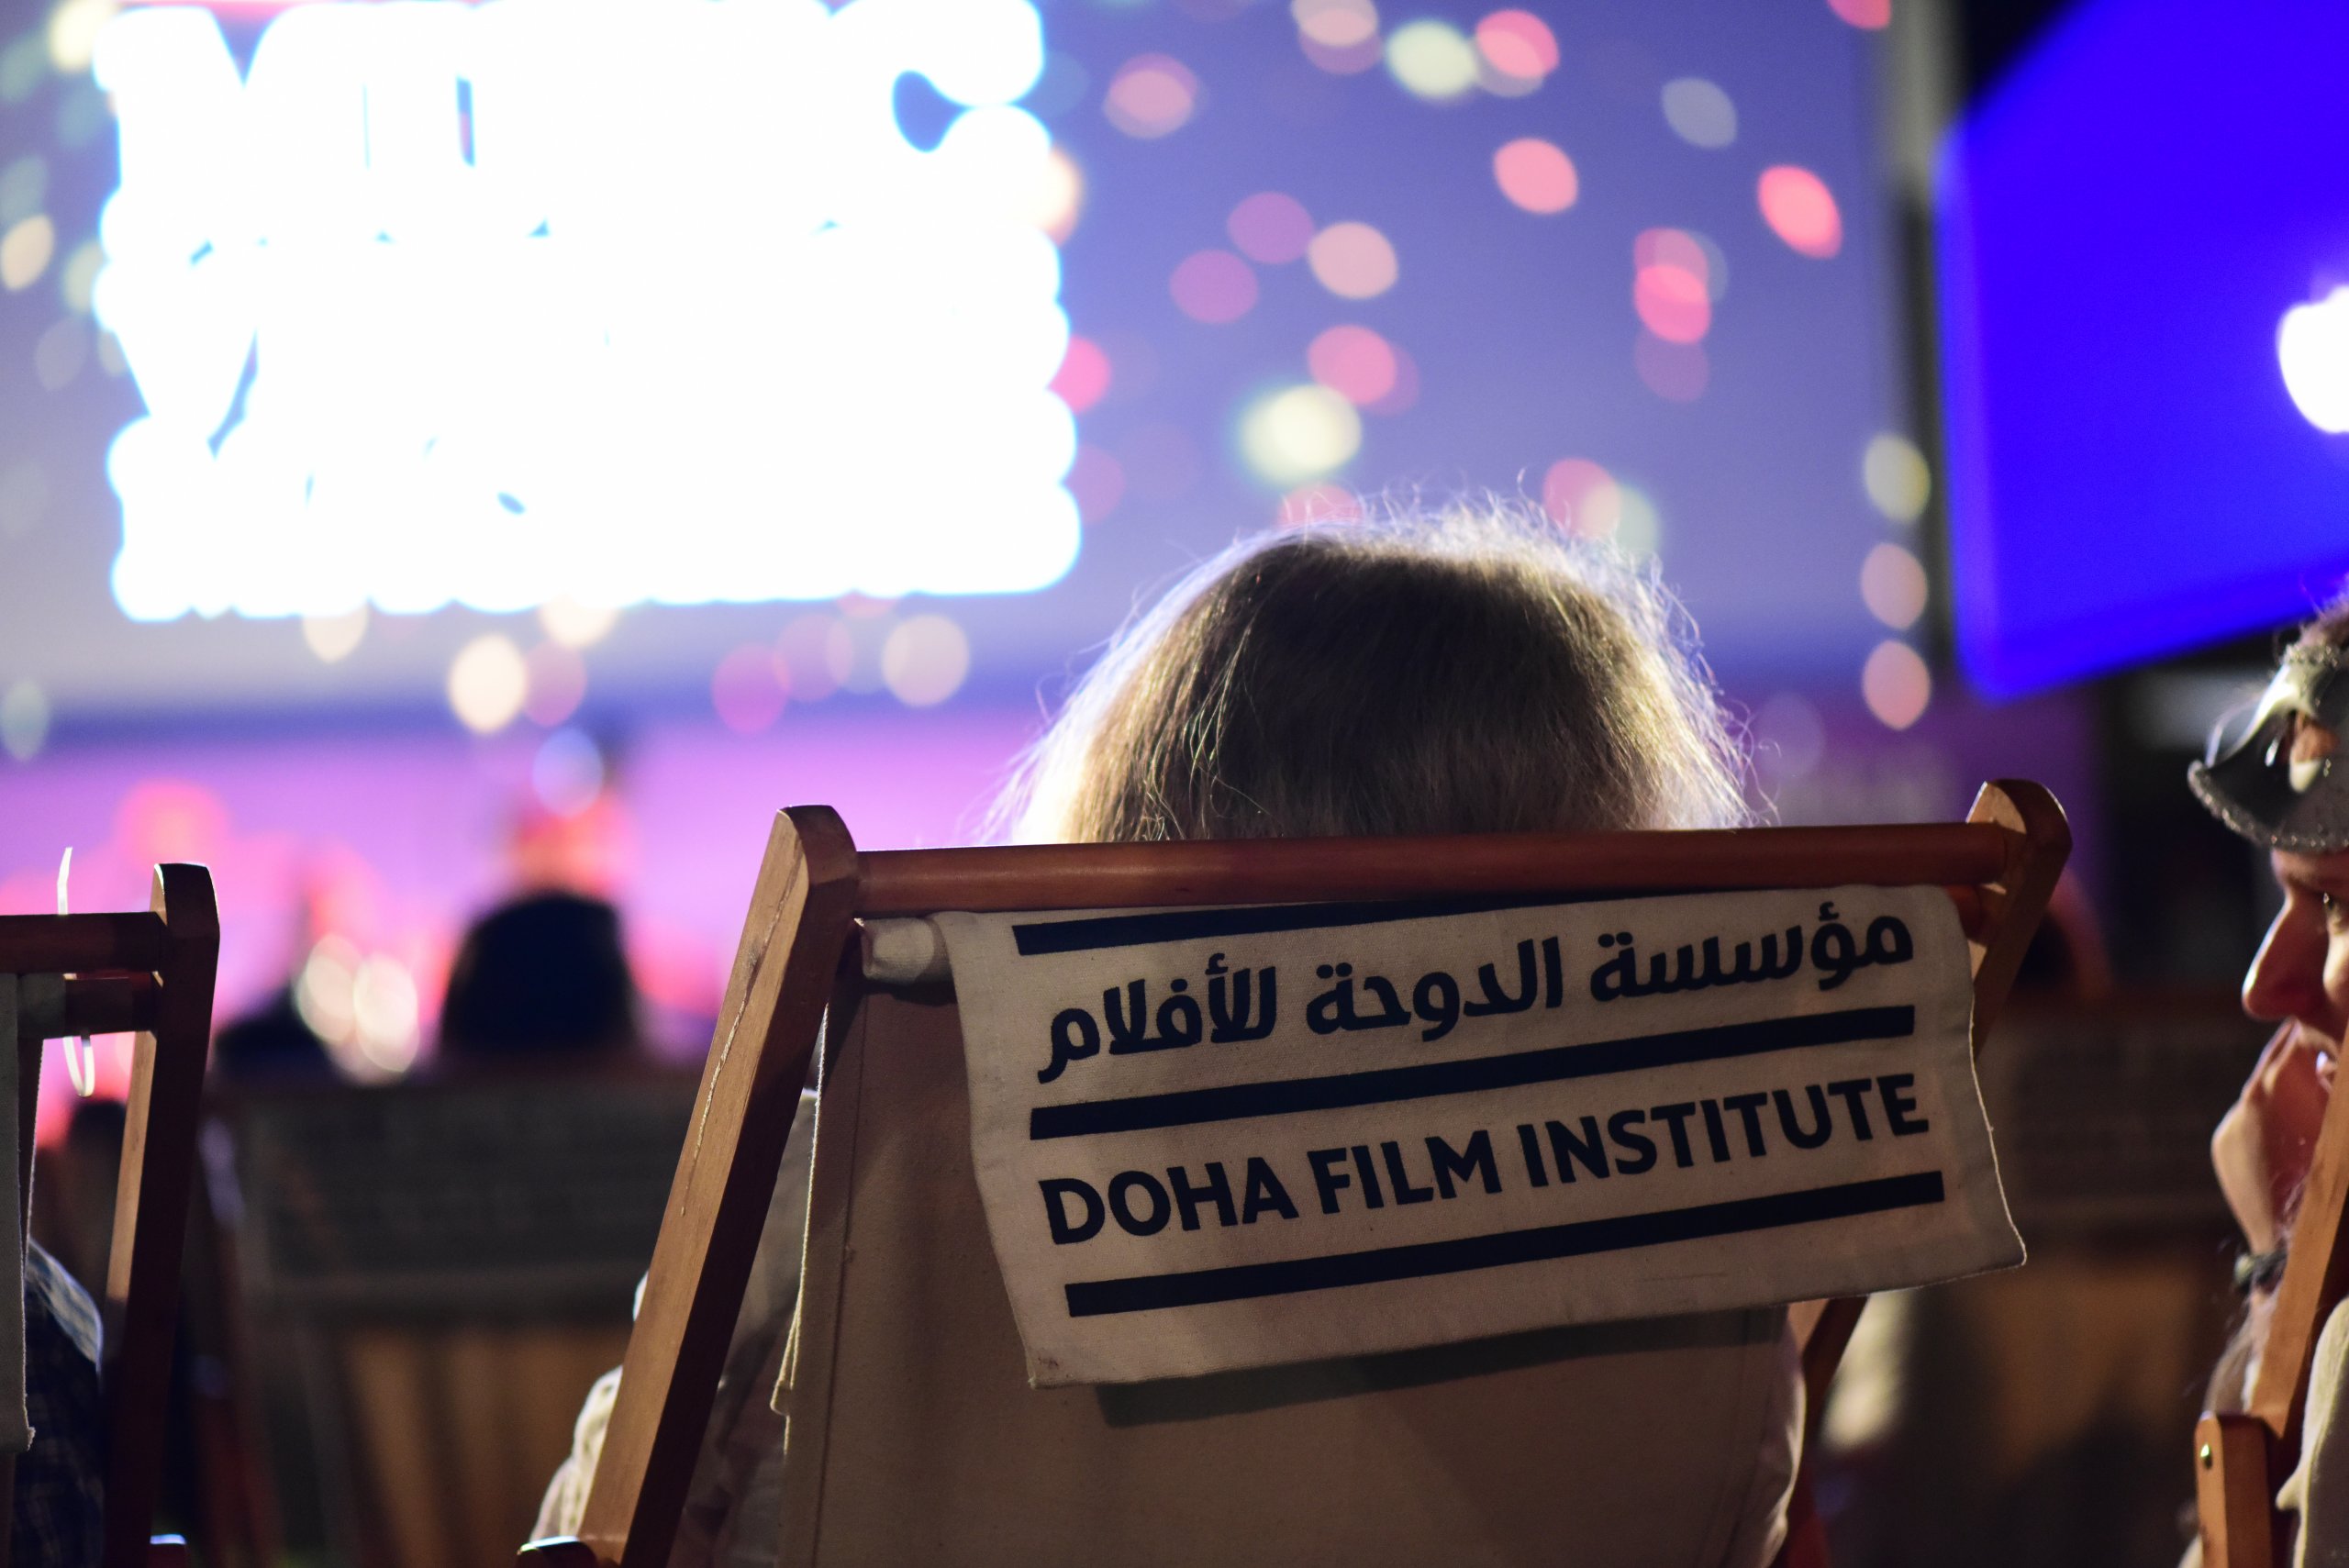 “ويش” ينظم عروضًا سينمائية خاصة خلال “أسبوع الدوحة للرعاية الصحية”